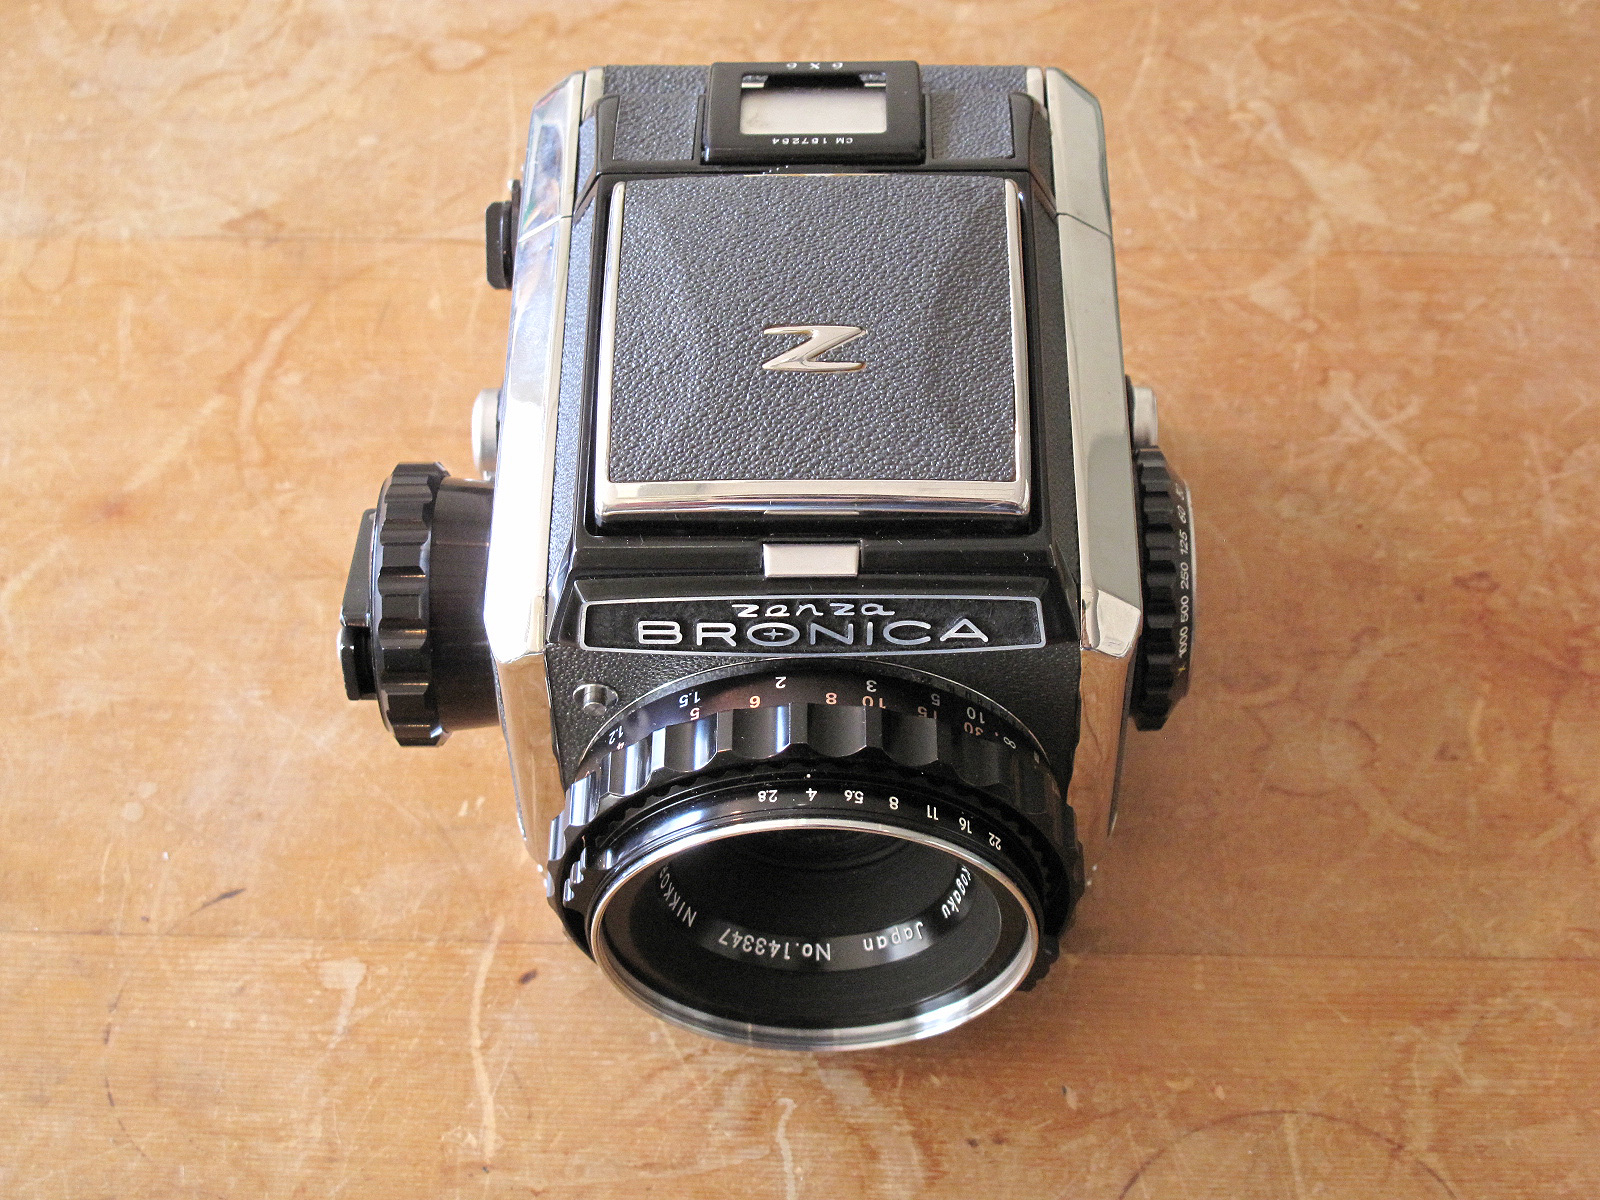 Zenza BRONICA S2 | イエネコカメラ 名古屋市 中古フィルムカメラを